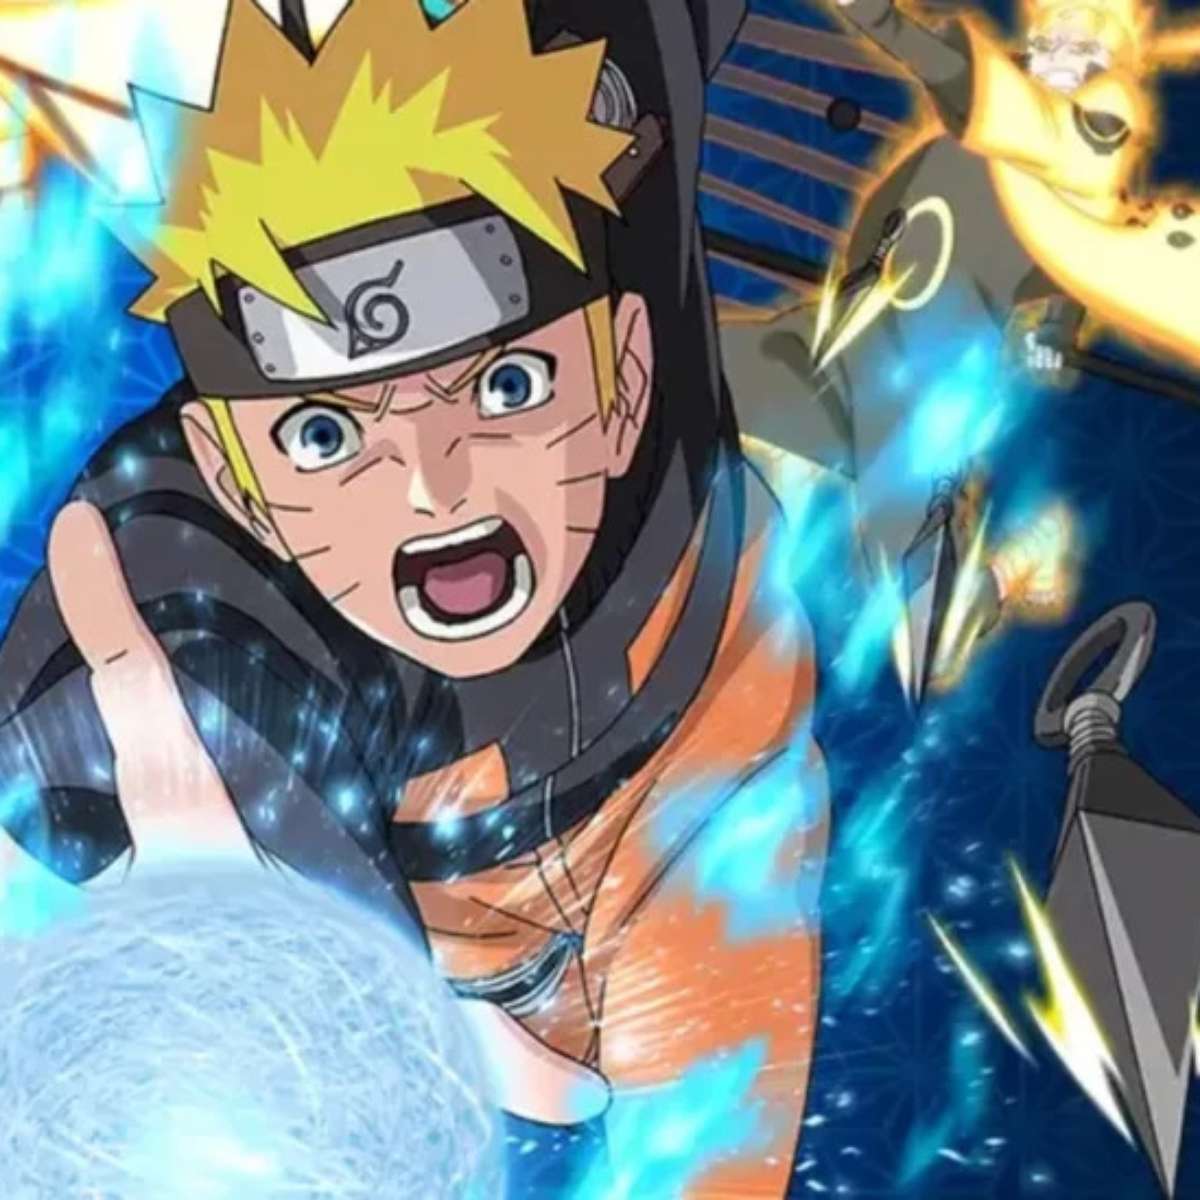 Naruto x Boruto Ninja Storm Connections é ideal para fãs do anime